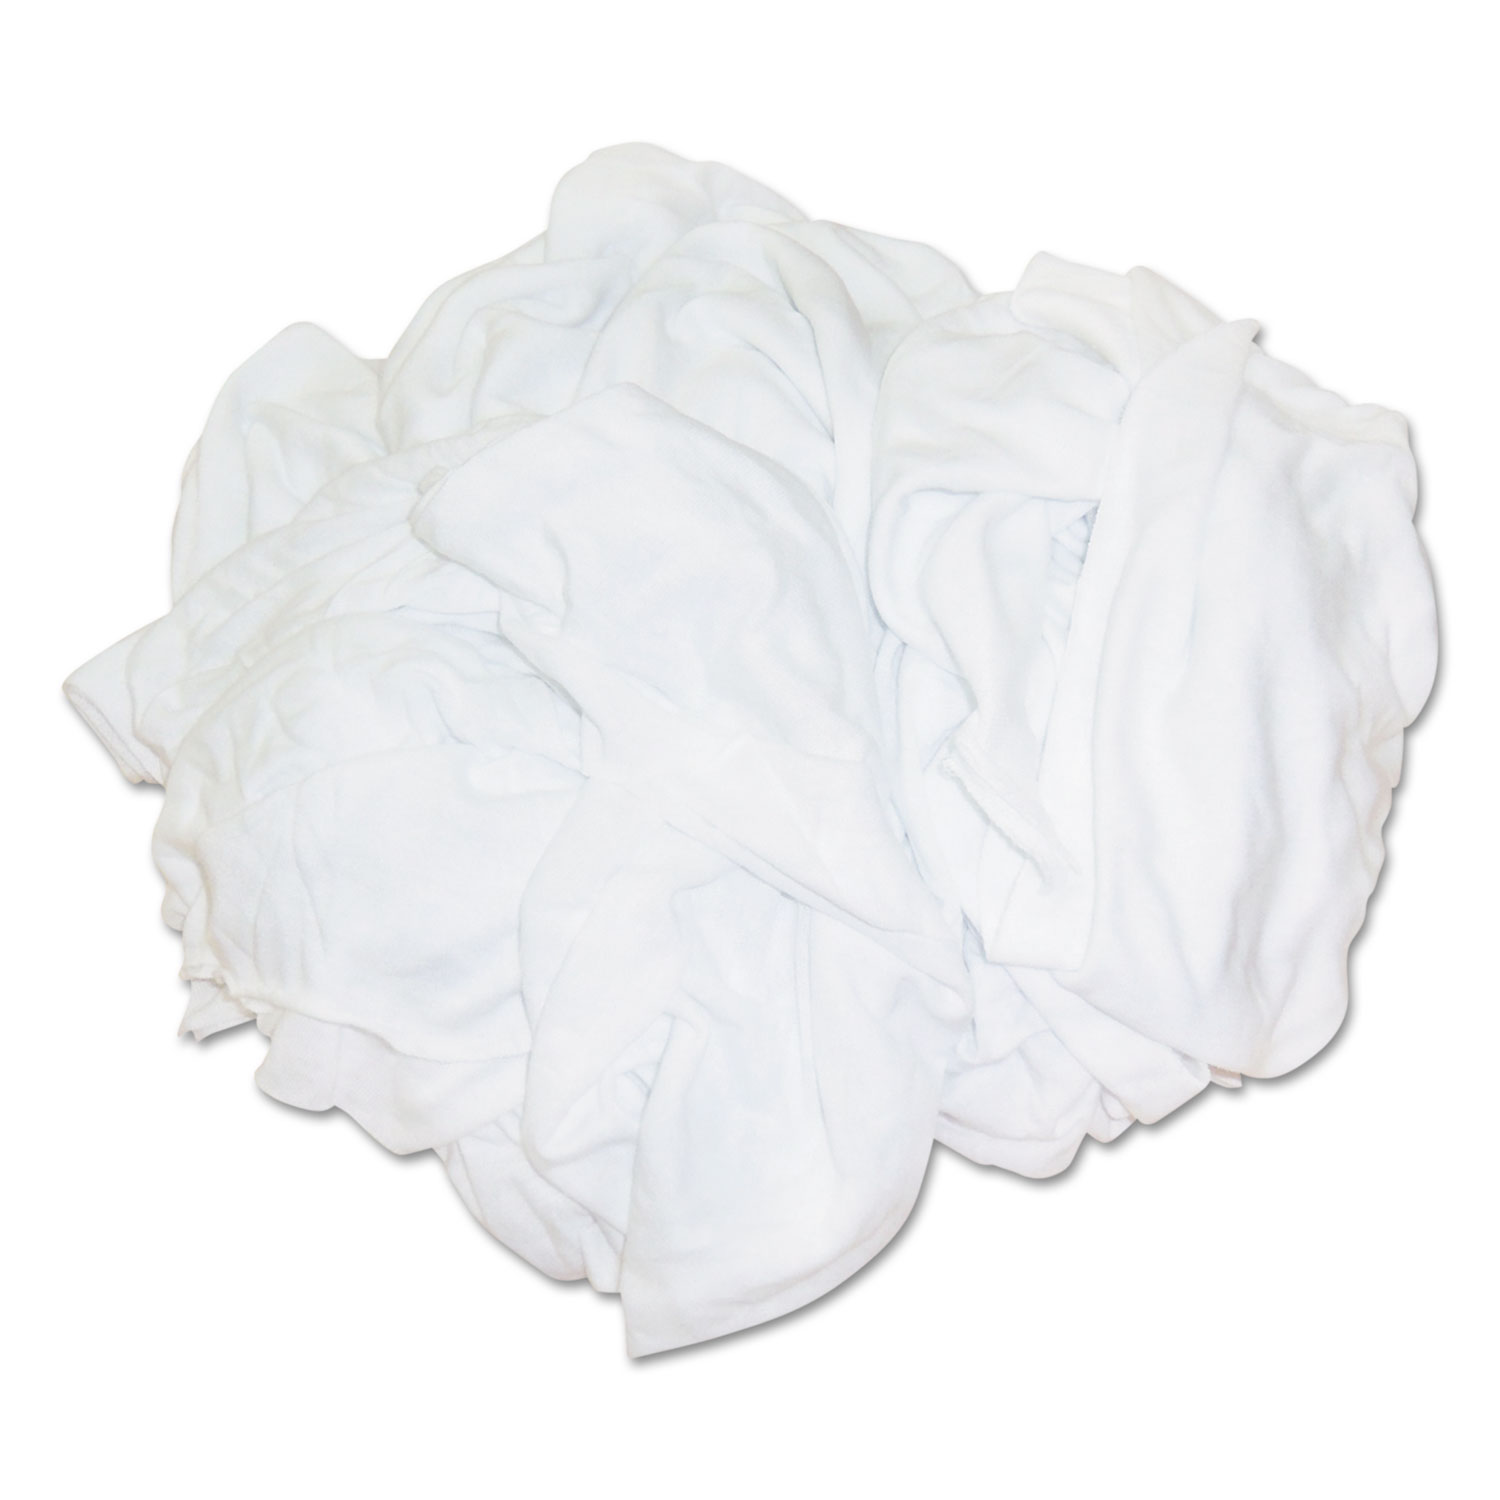  HOSPECO 455-25BP New Bleached White T-Shirt Rags, Multi-Fabric, 25 lb Polybag (HOS45525BP) 